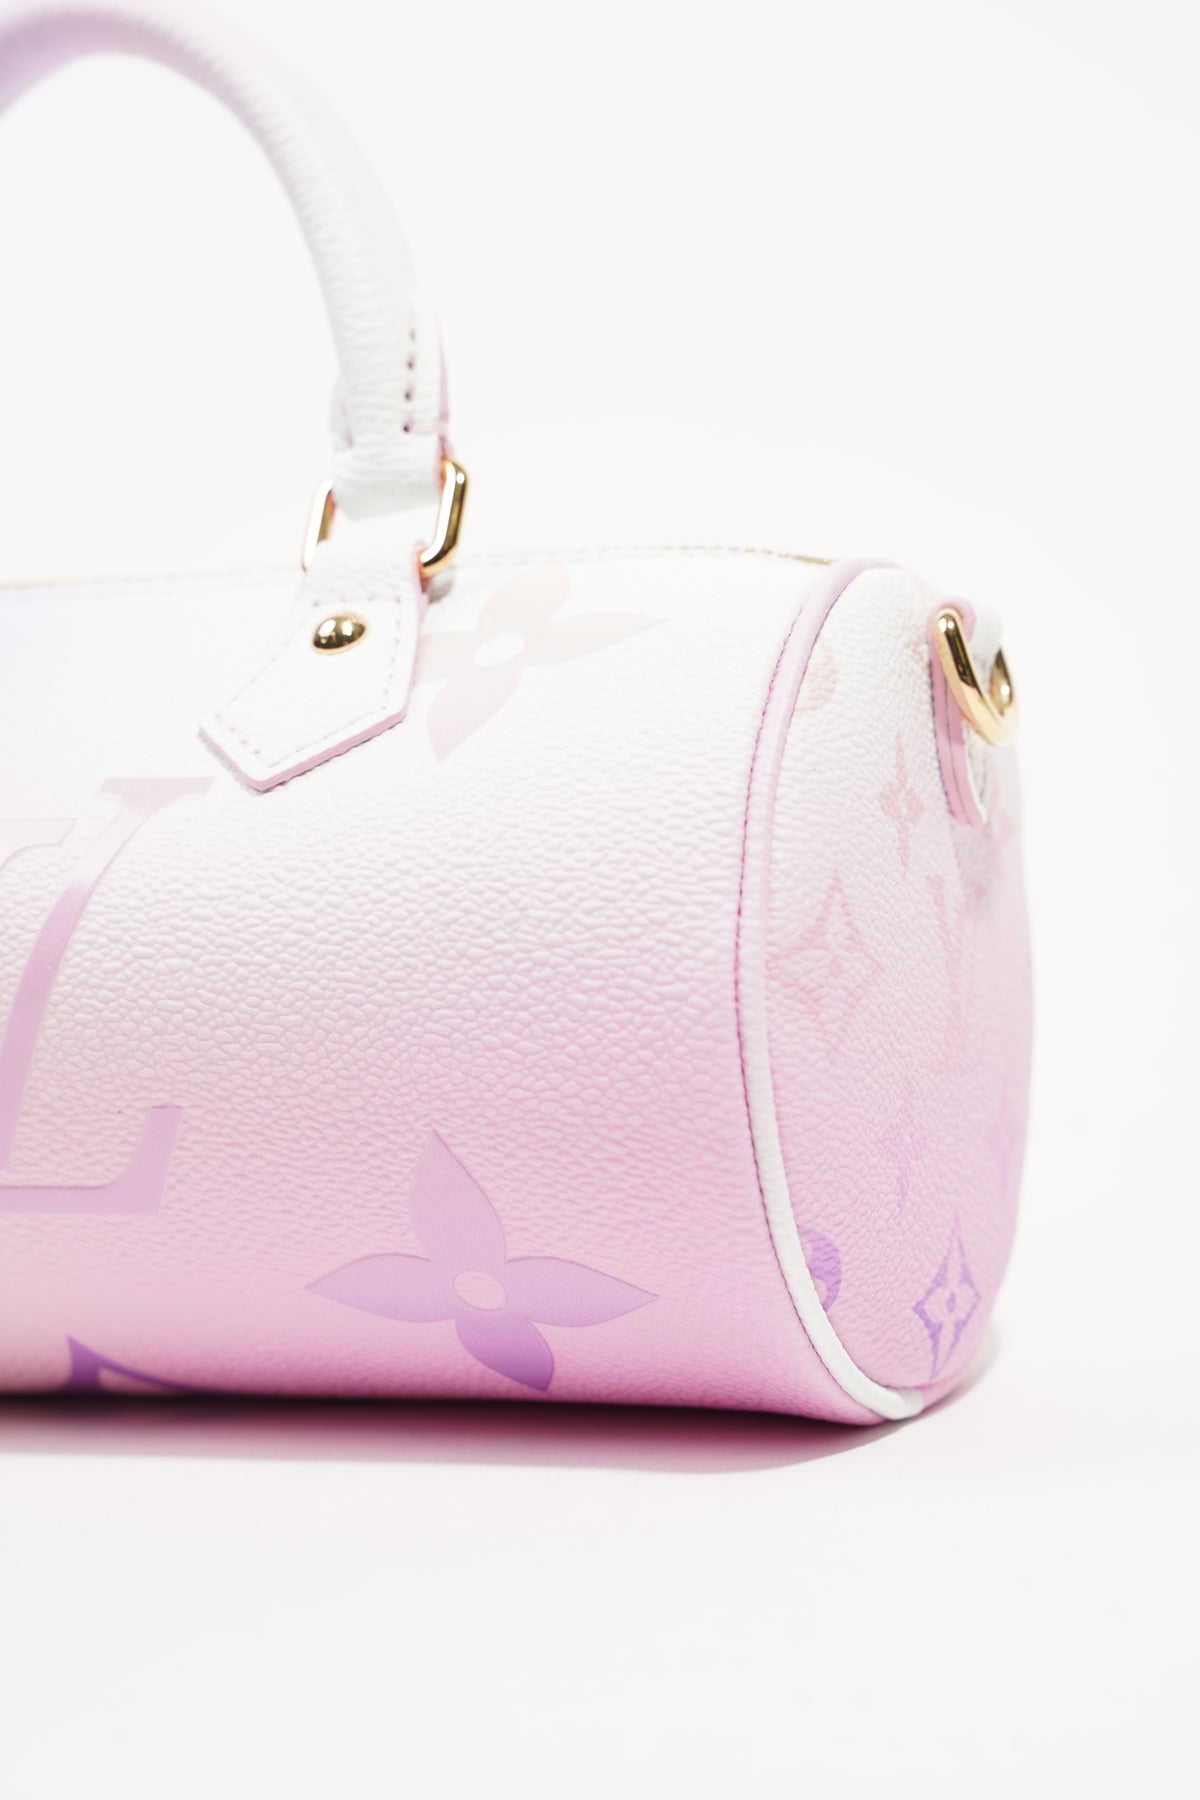 Louis Vuitton Papillon BB Bag - Vitkac shop online